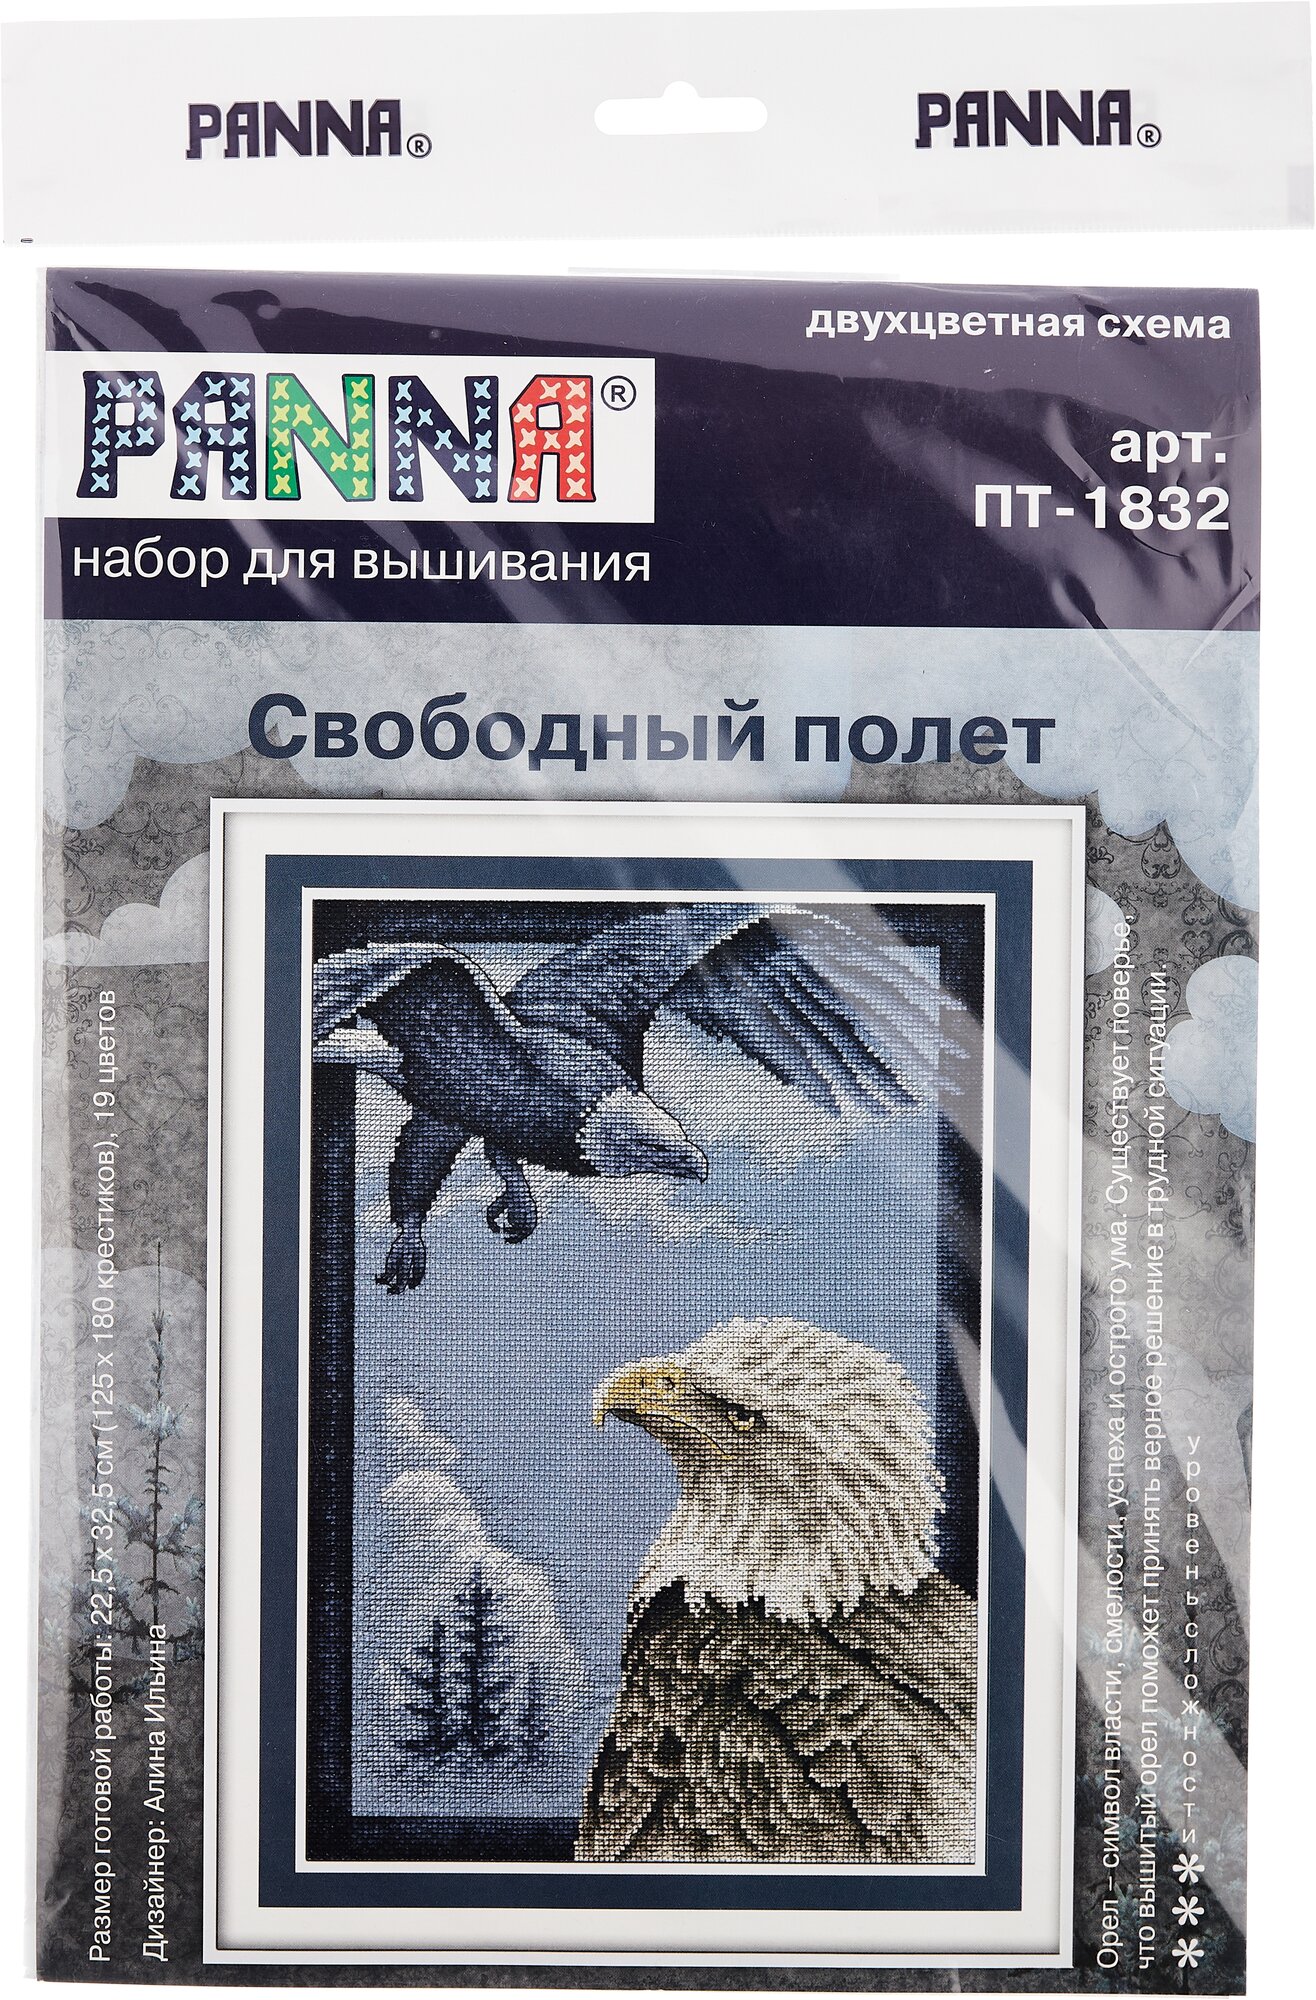 ПТ-1832 "Свободный полет" PANNA - фото №5